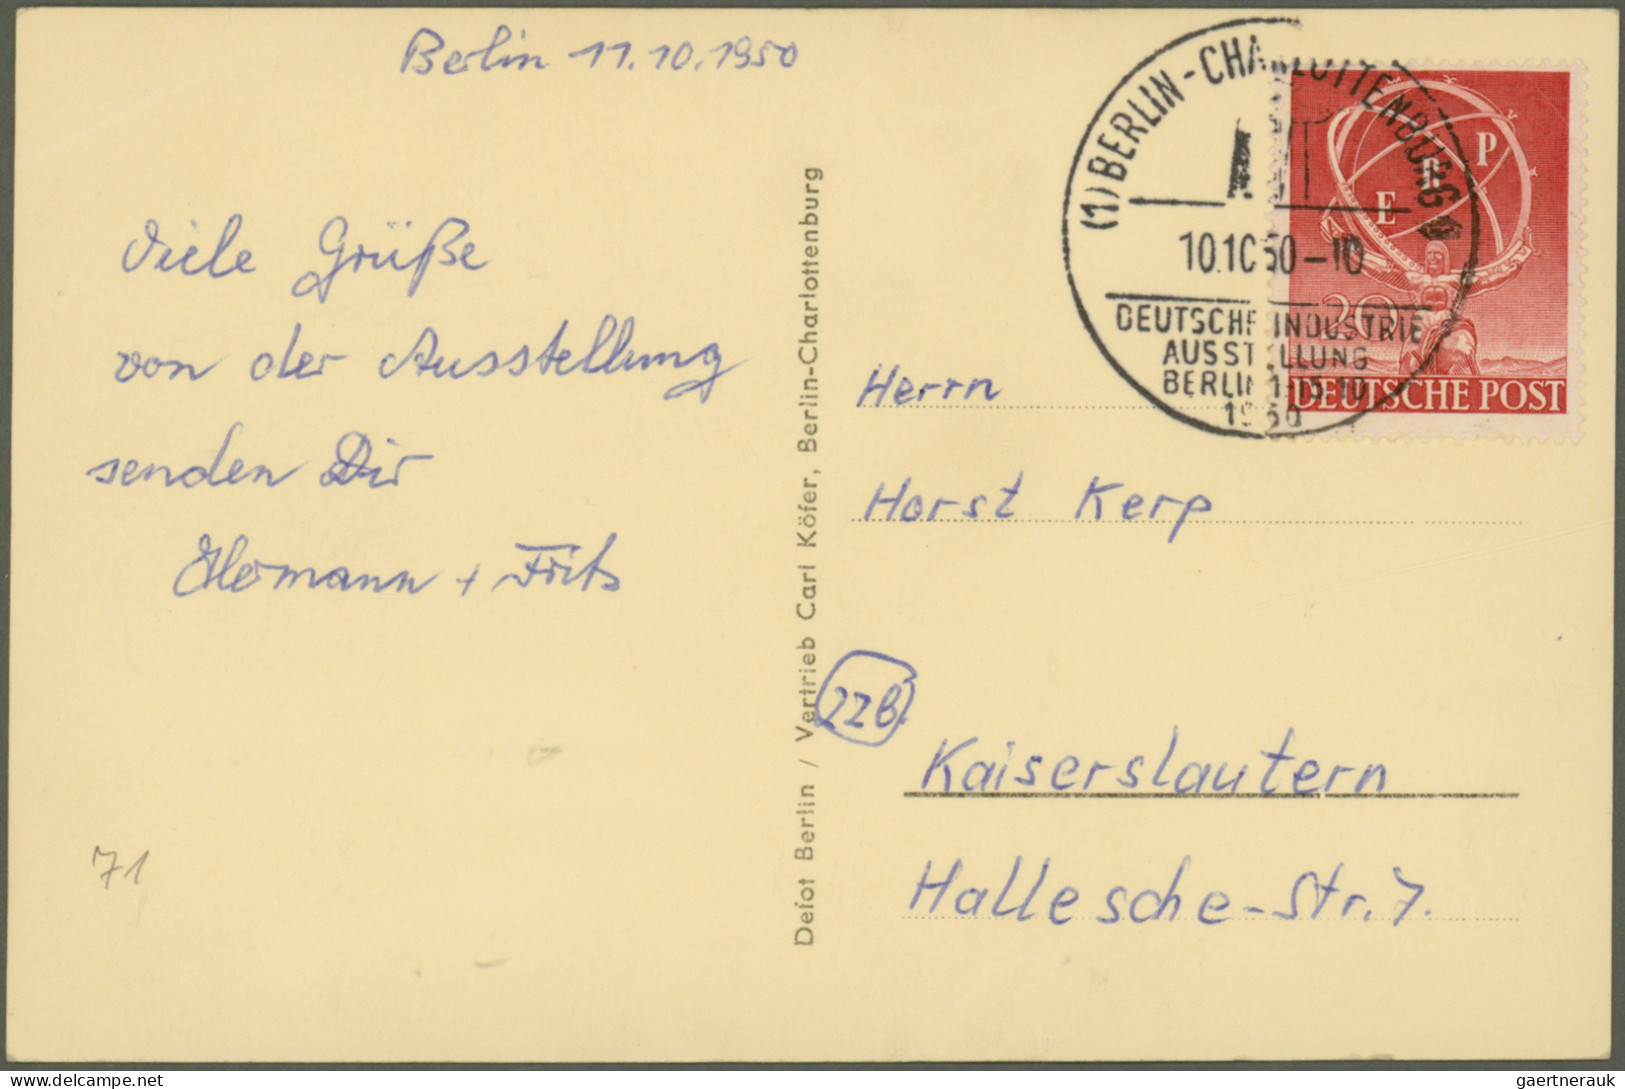 Berlin: 1949/1960, saubere und vielseitige Partie von ca. 112 philatelistischen